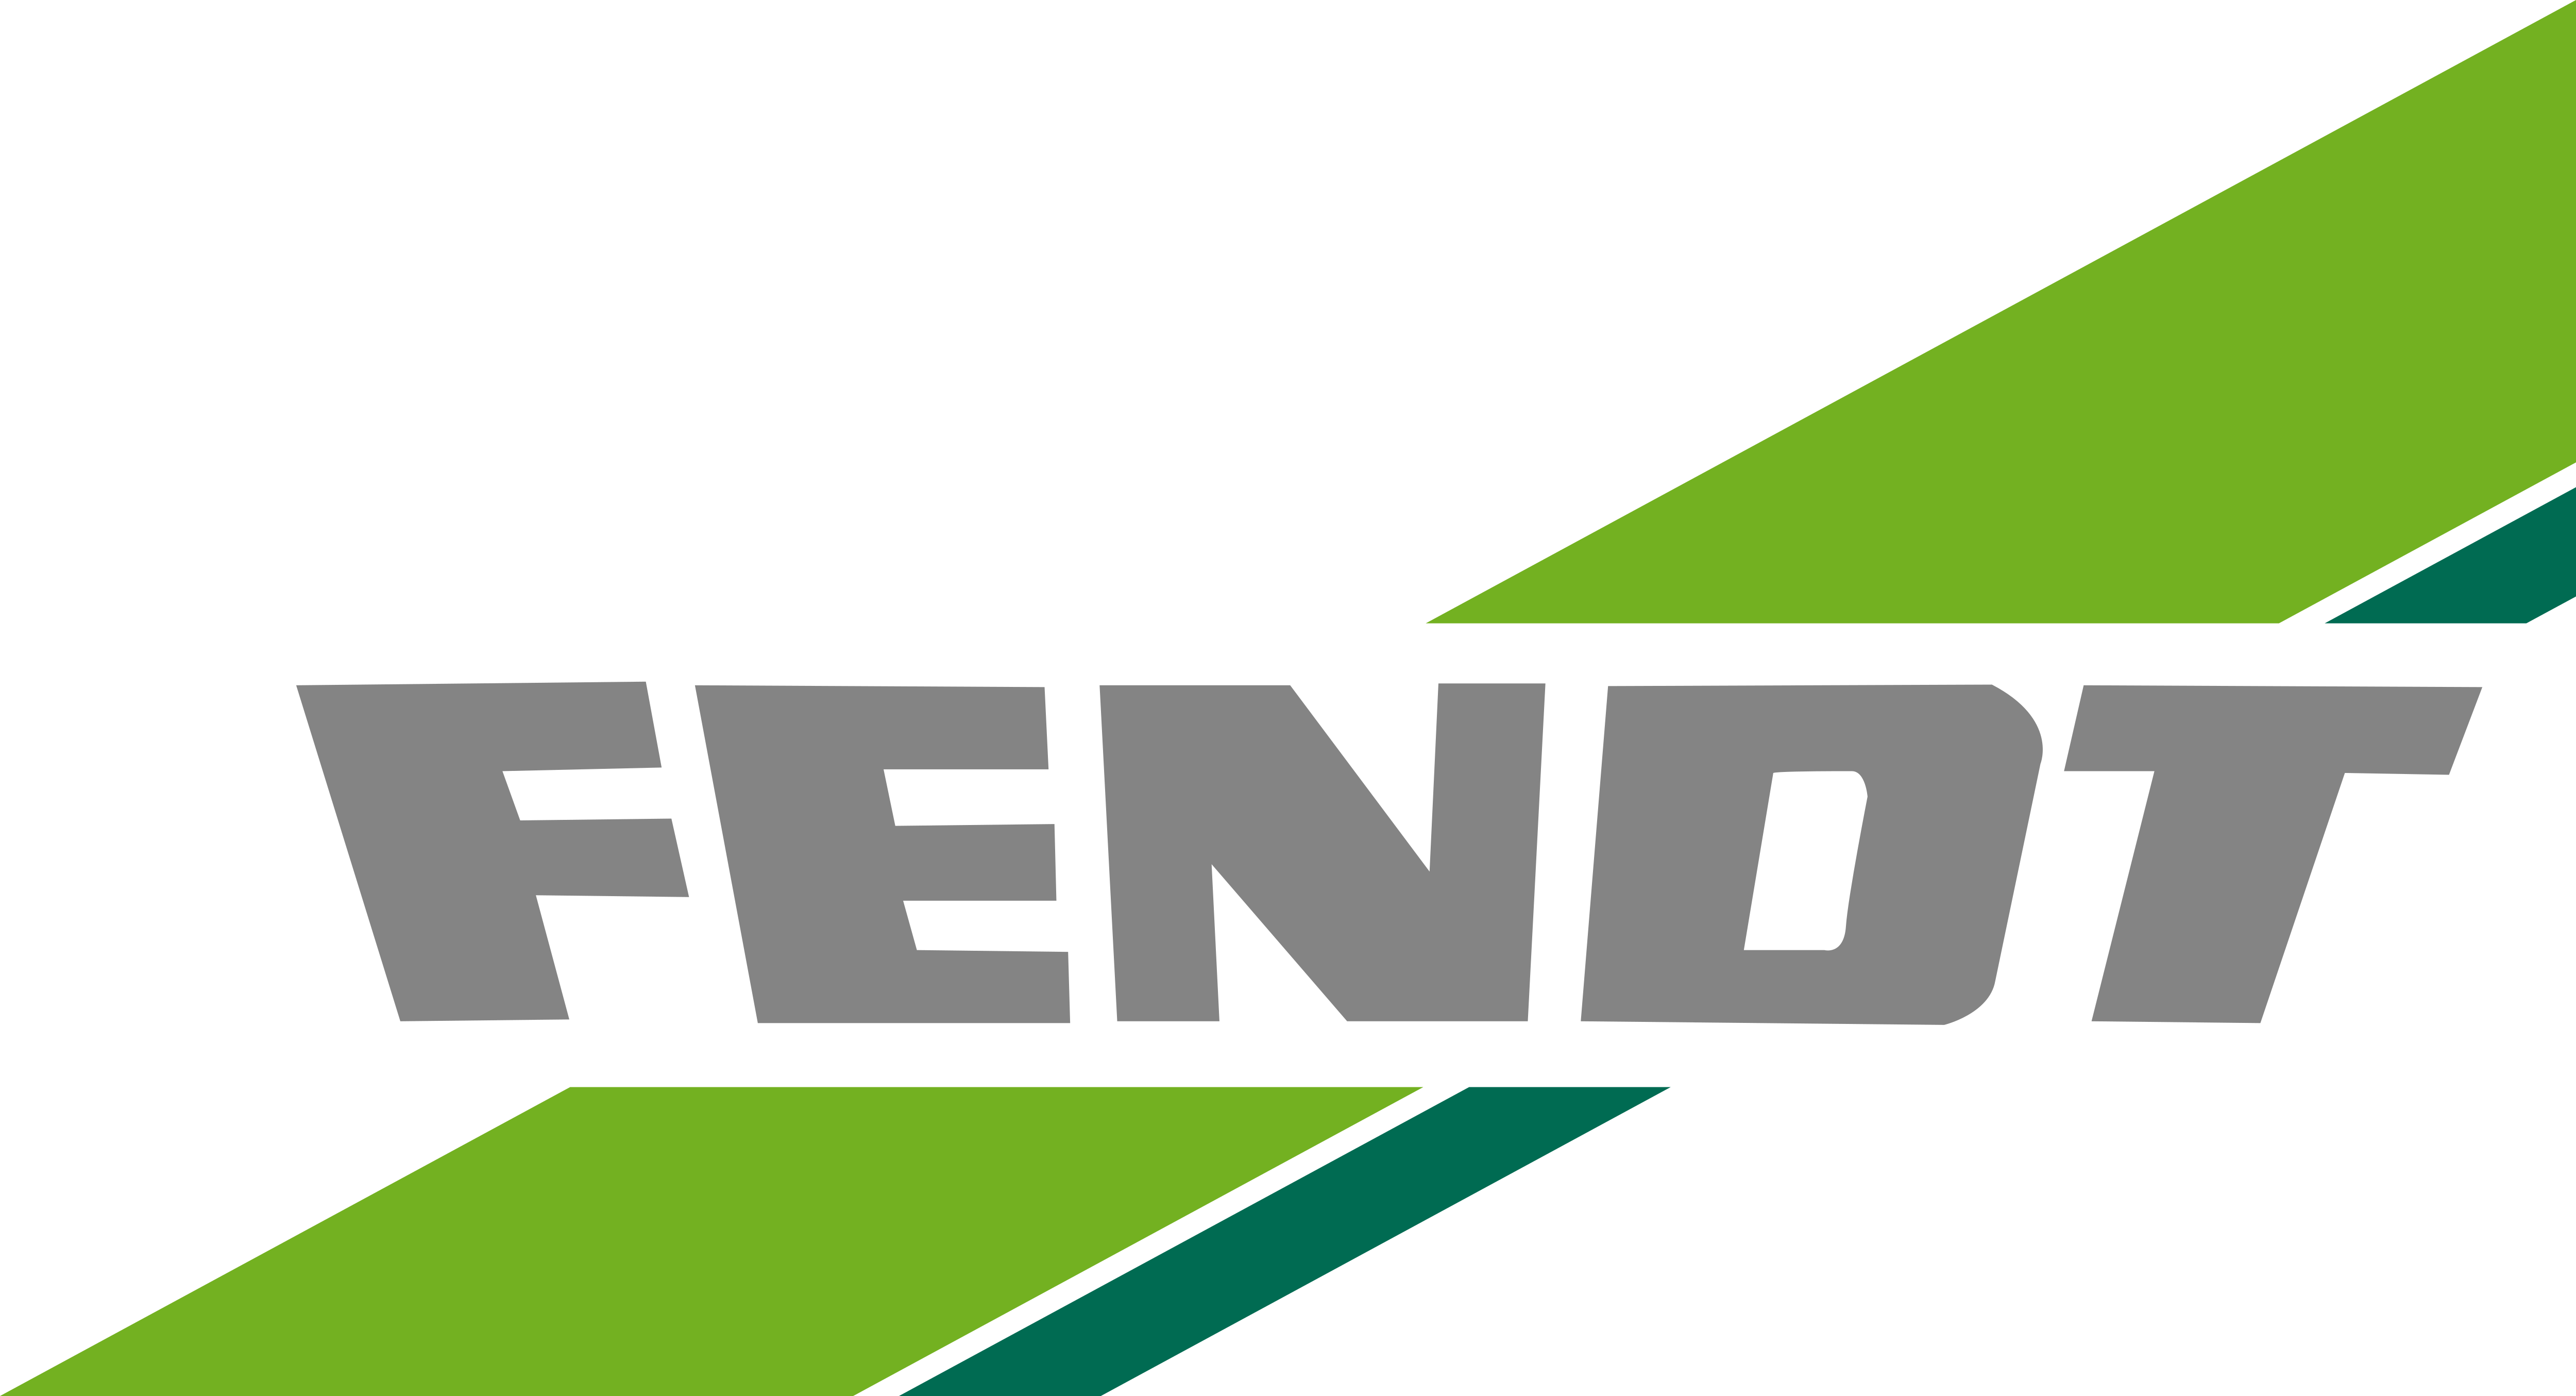 Fendt Tractor Logo